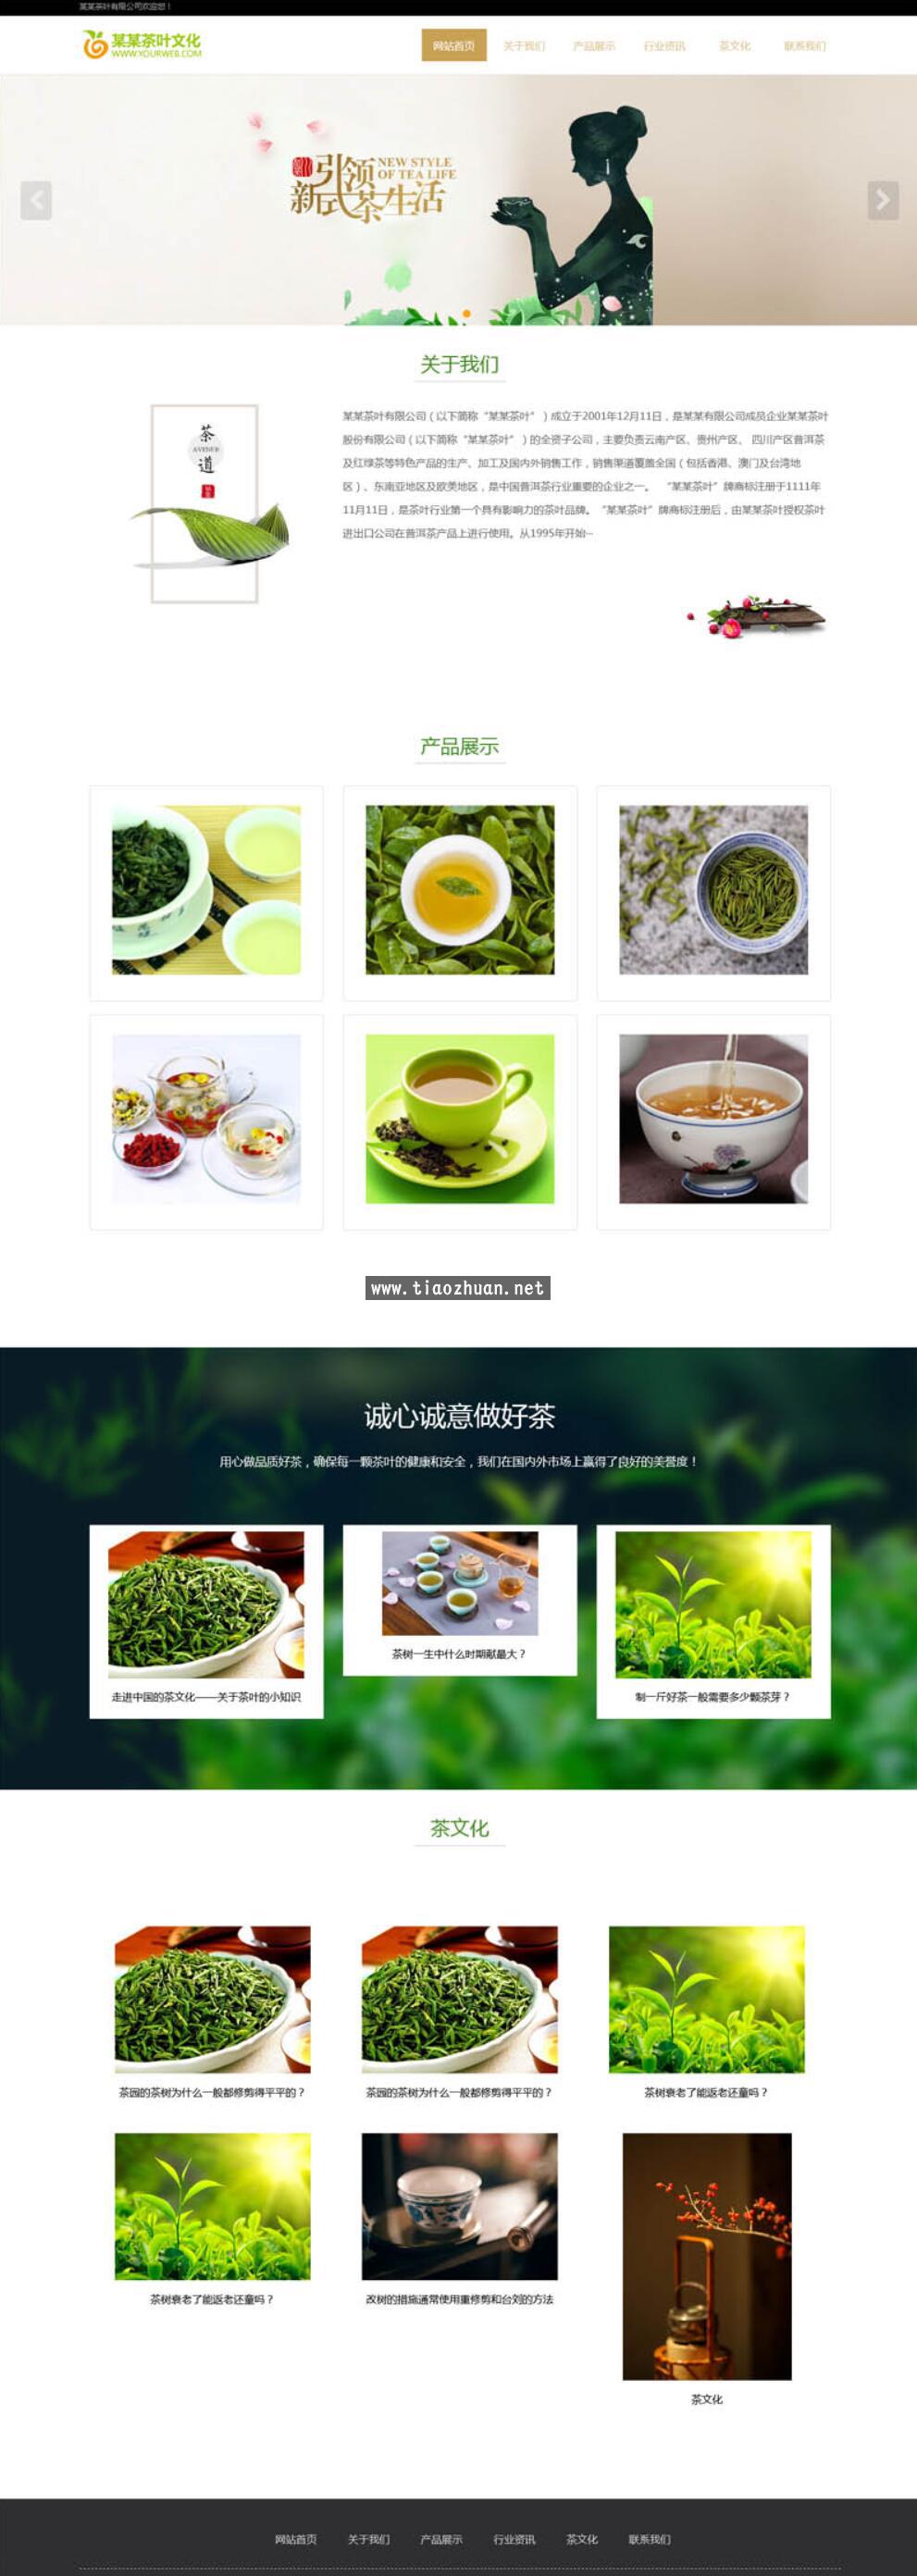 茶道文化网站模板 茶叶茶艺茶文化养生茶网站源码下载